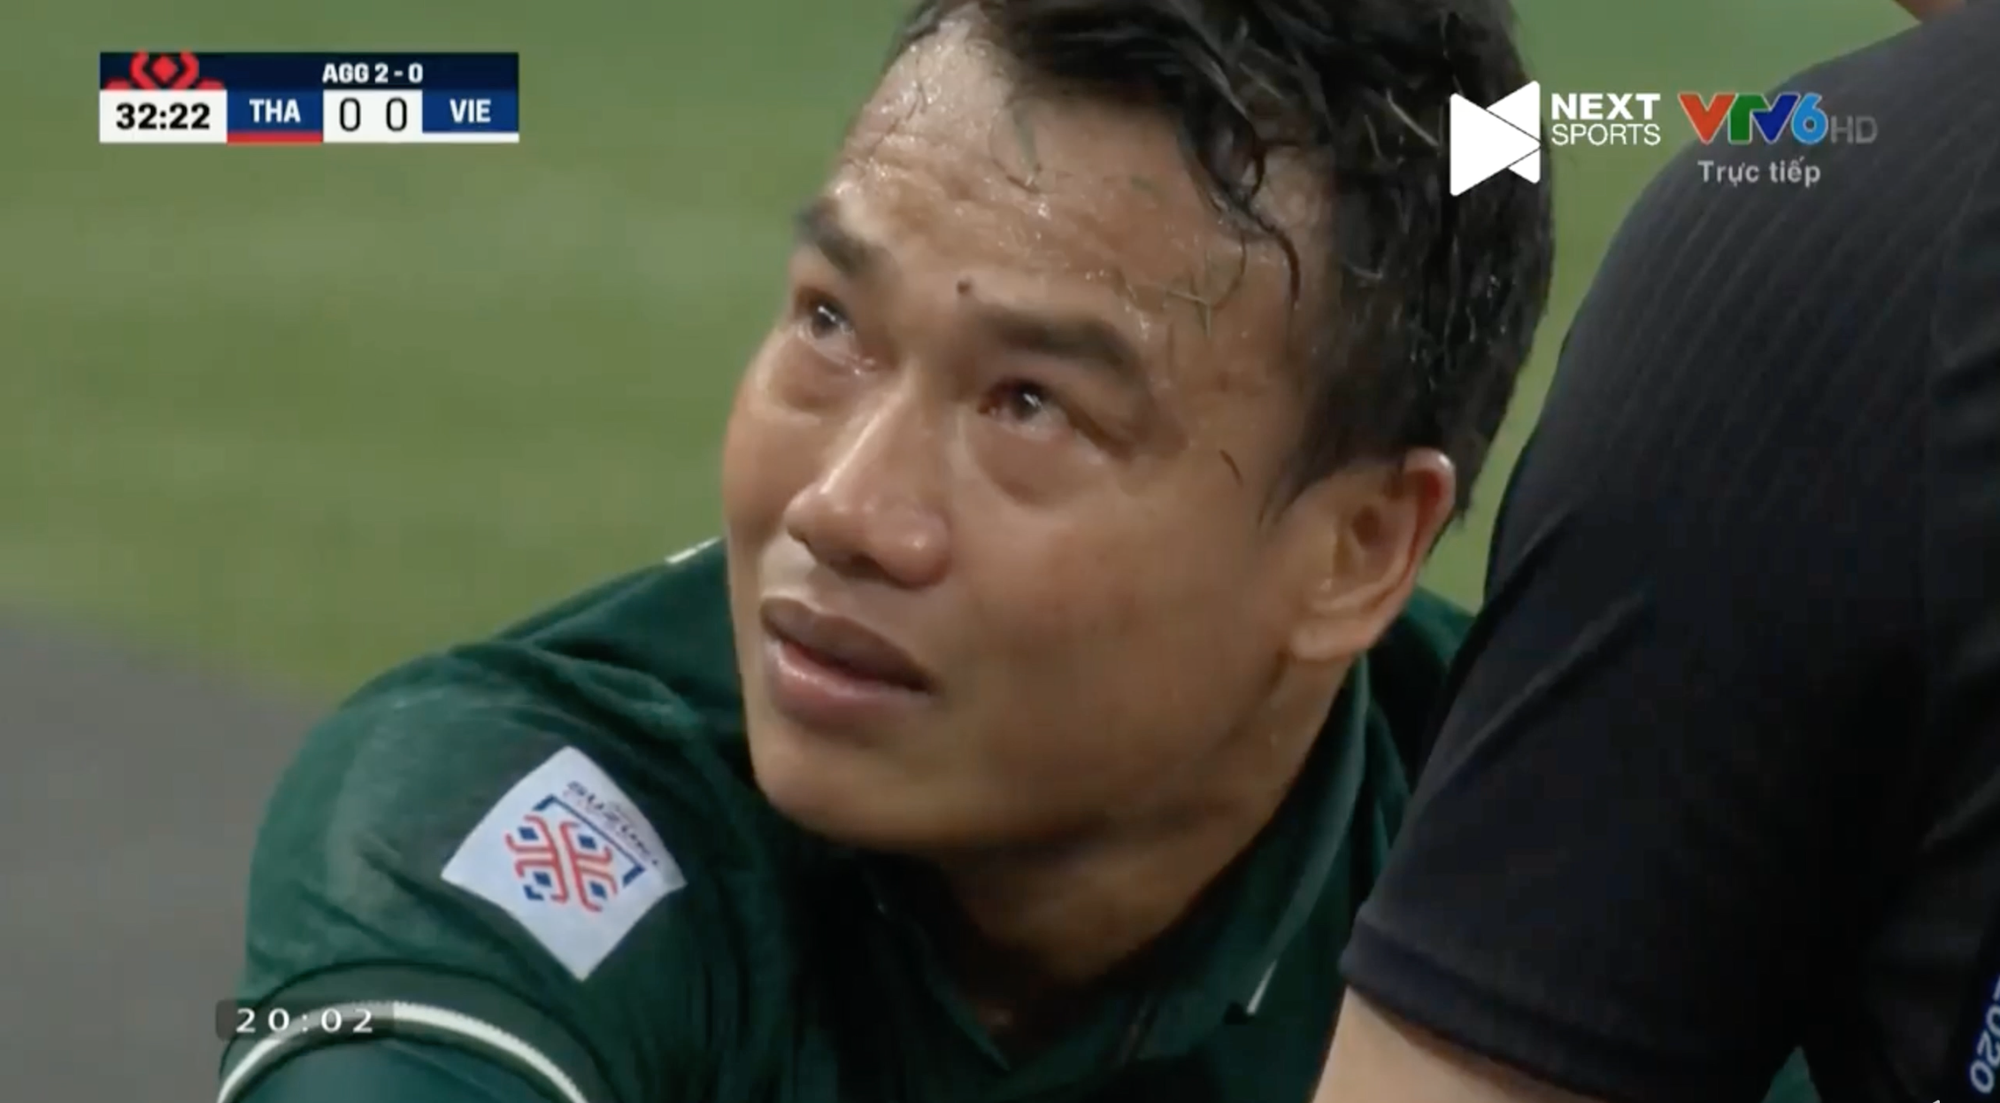 Khoảnh khắc: Thủ môn Thái Lan khóc hết nước mắt khi buộc phải rời sân bằng cáng - Ảnh 2.